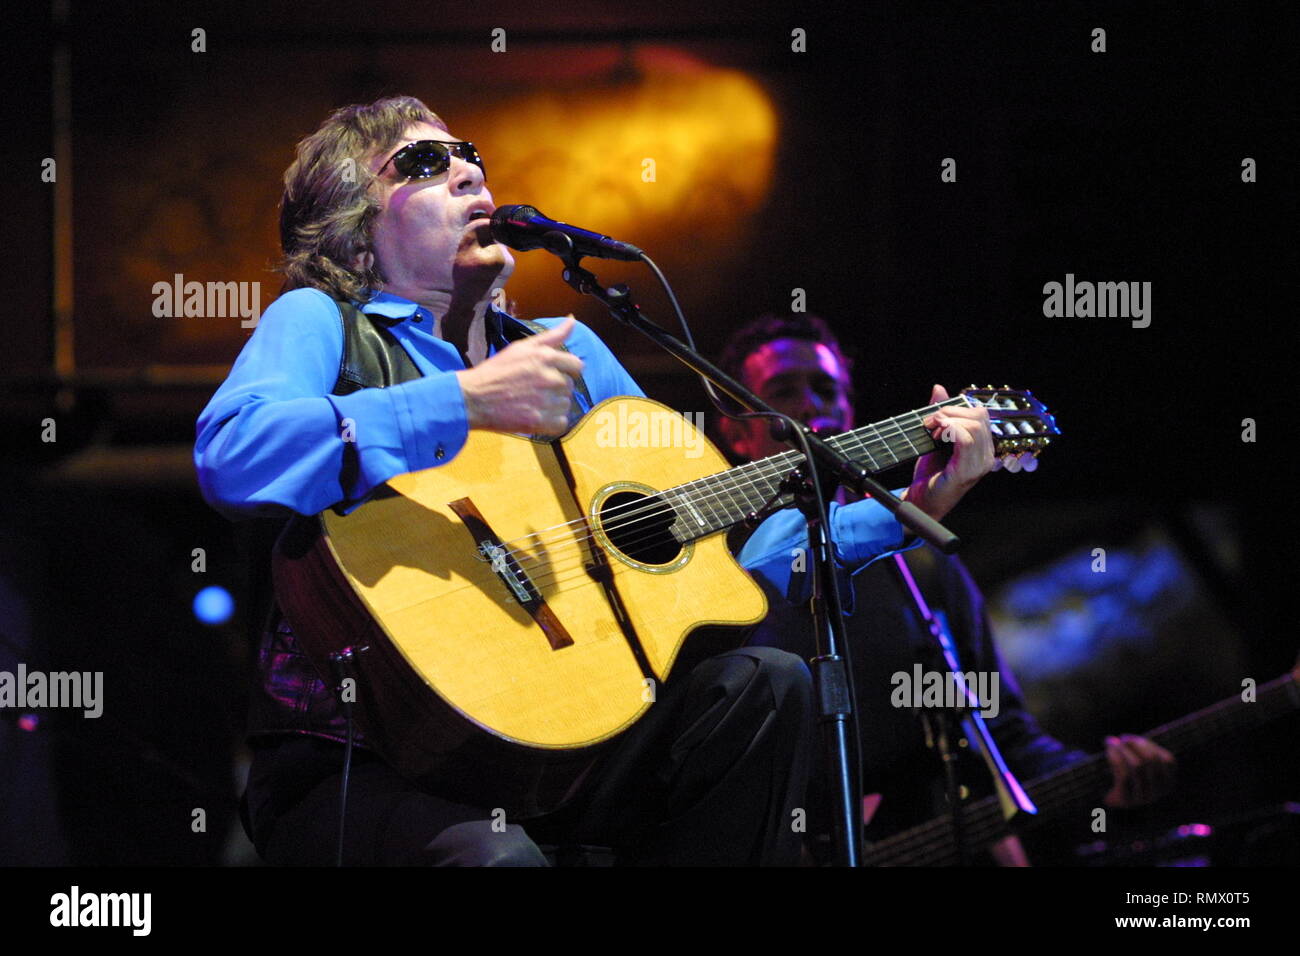 Puerto Rican singer et guitariste virtuose, JosŽFeliciano, né aveugle de façon permanente en raison de glaucome congénital, est montré sur scène pendant un concert en direct de l'apparence. Banque D'Images